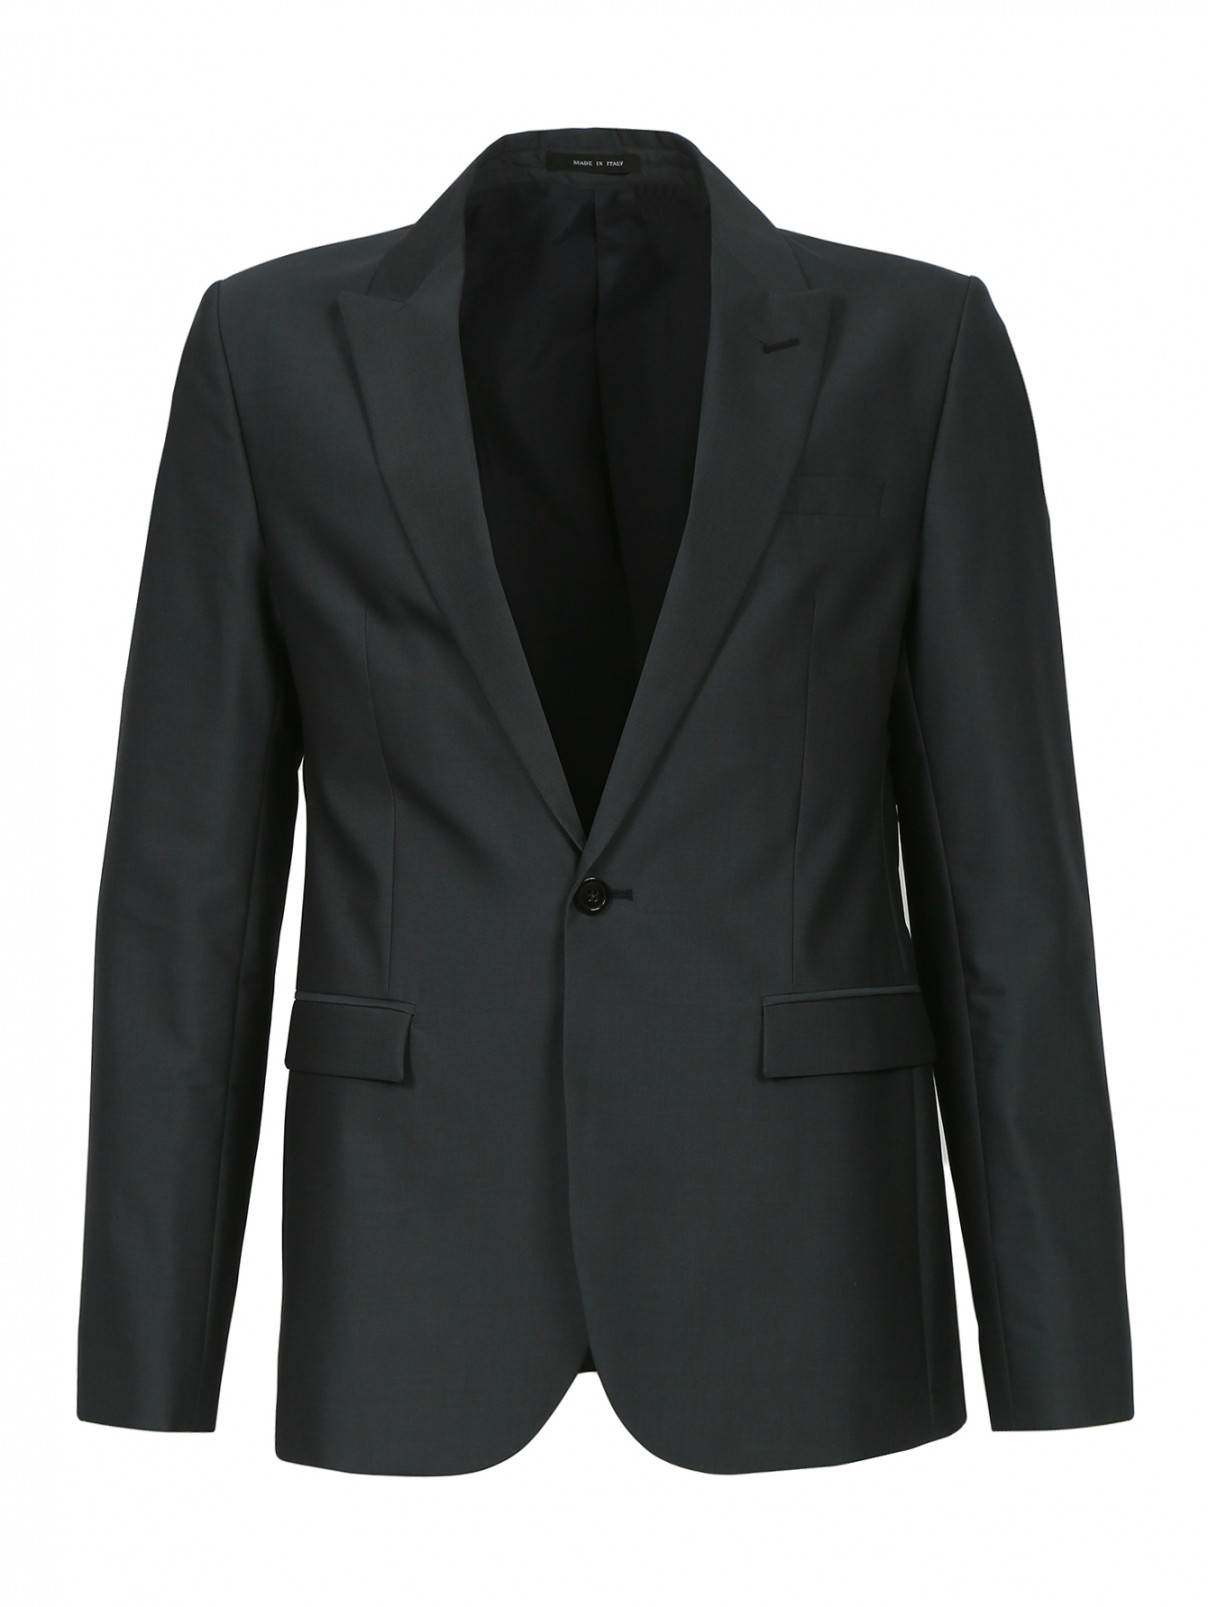 Однобортный пиджак из шерсти и хлопка Emporio Armani  –  Общий вид  – Цвет:  Серый